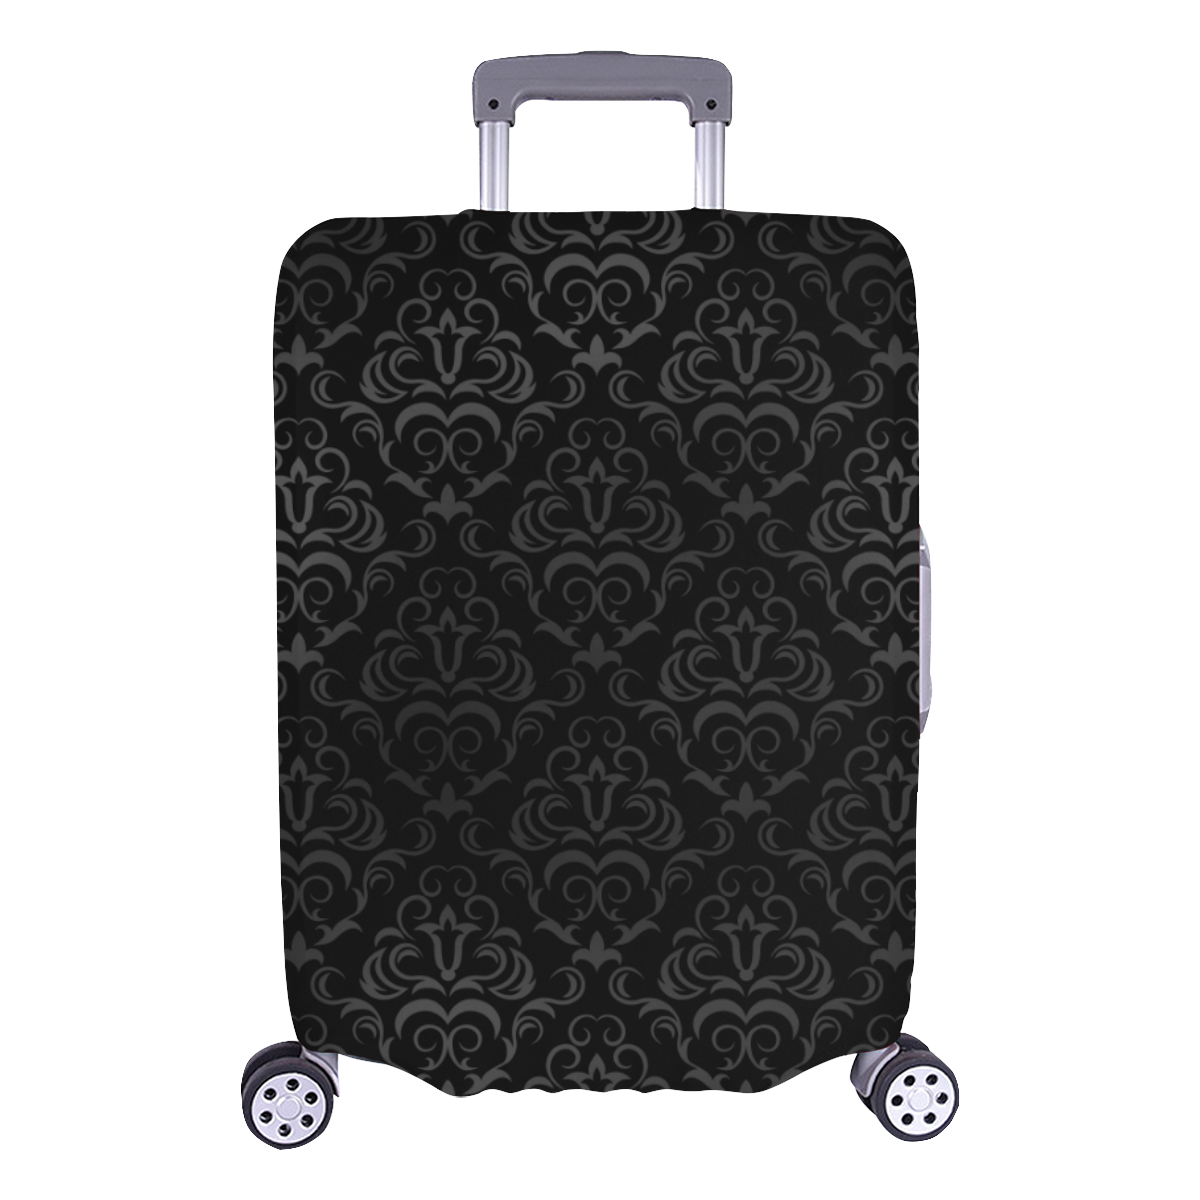 Elegant vintage floral damasks in  gray and black Luggage Cover/Large 26"-28"